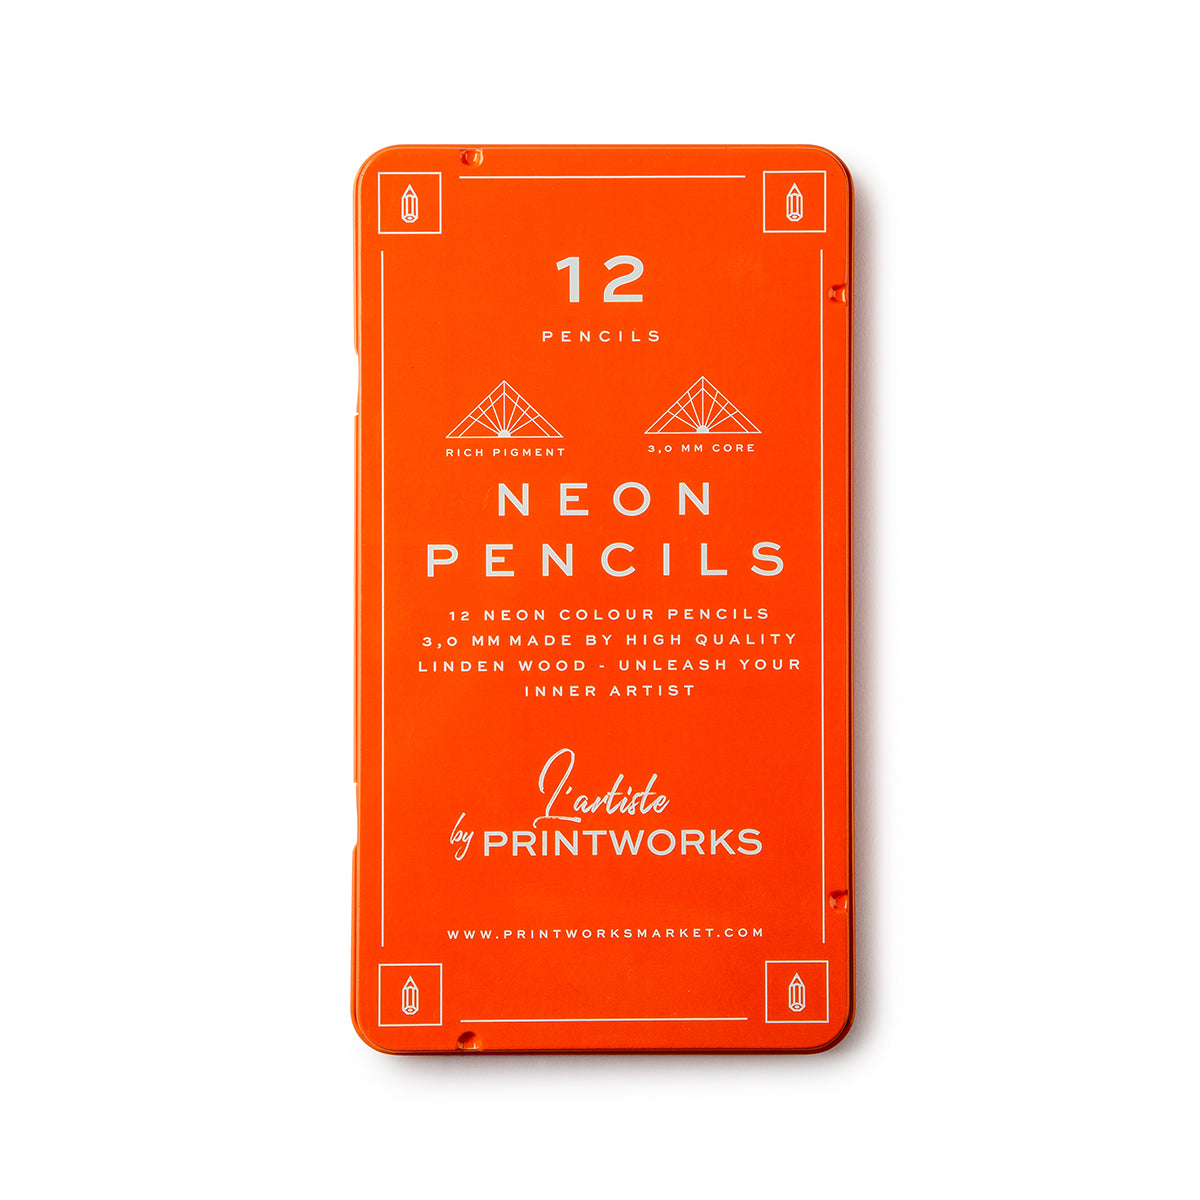 Colour Pencils (set of 12) - Neon